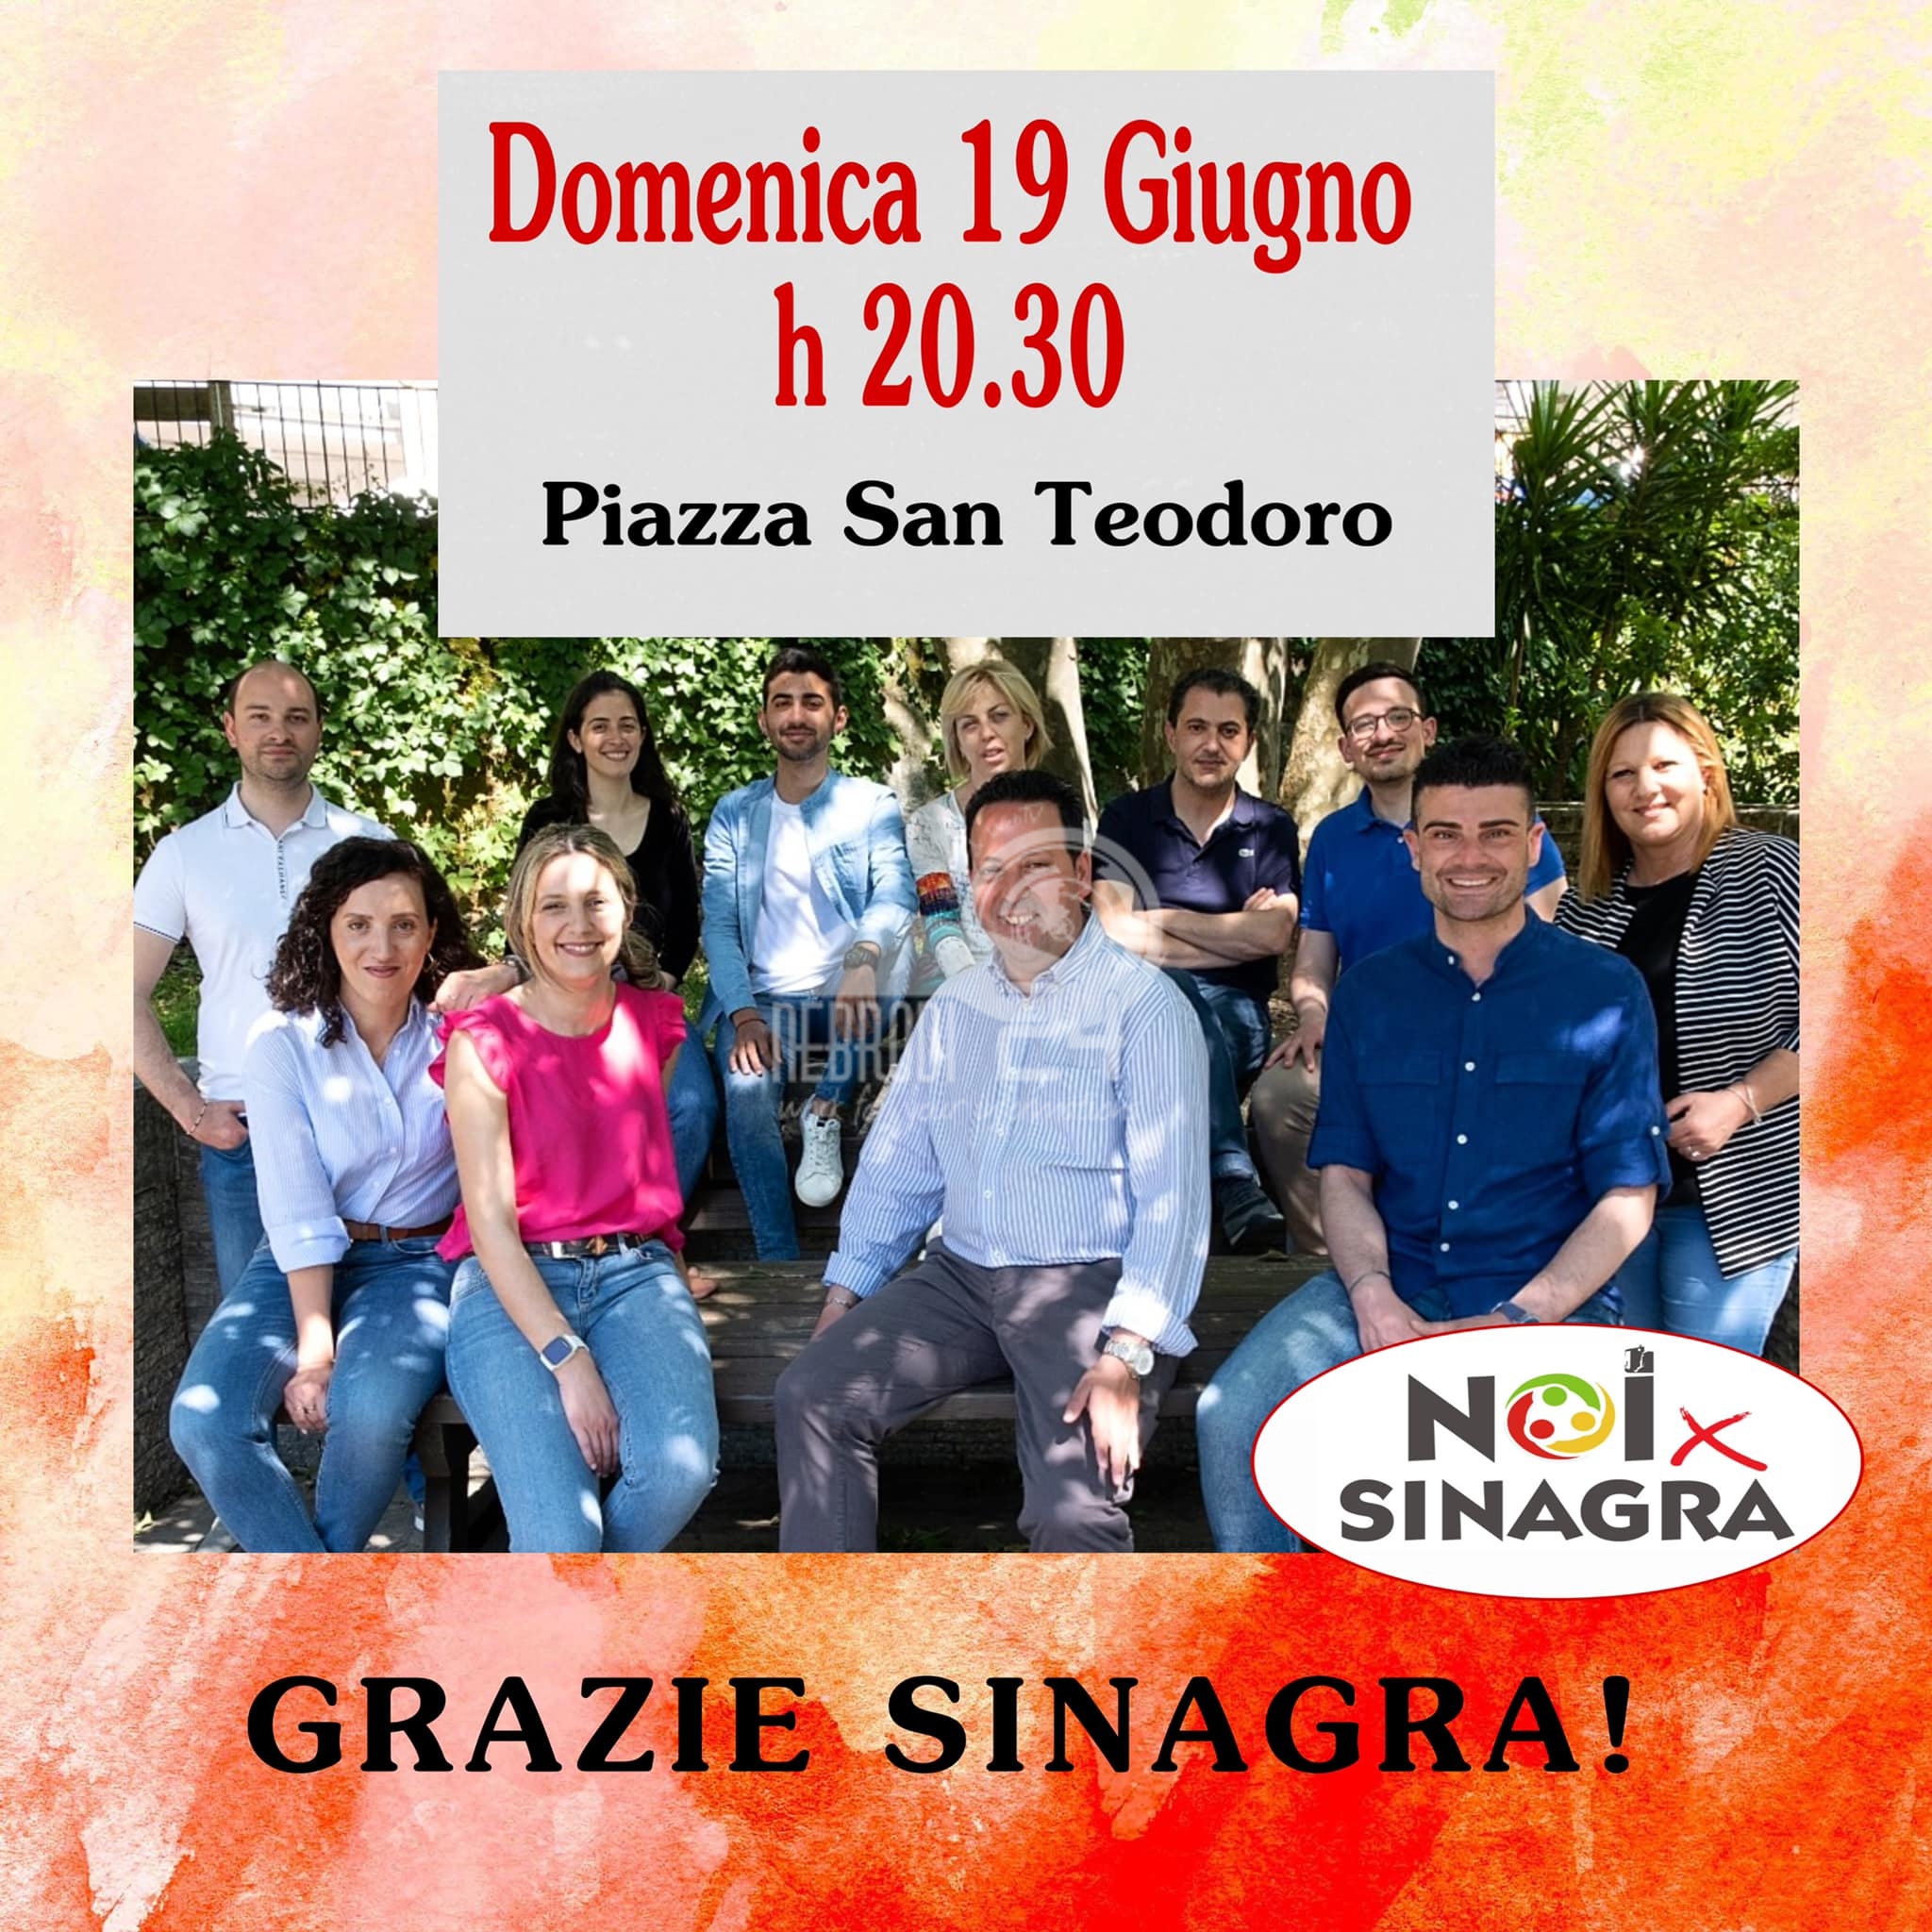 Sinagra – Domenica 19 giugno, in piazza San Teodoro, il comizio della lista Noi X Sinagra